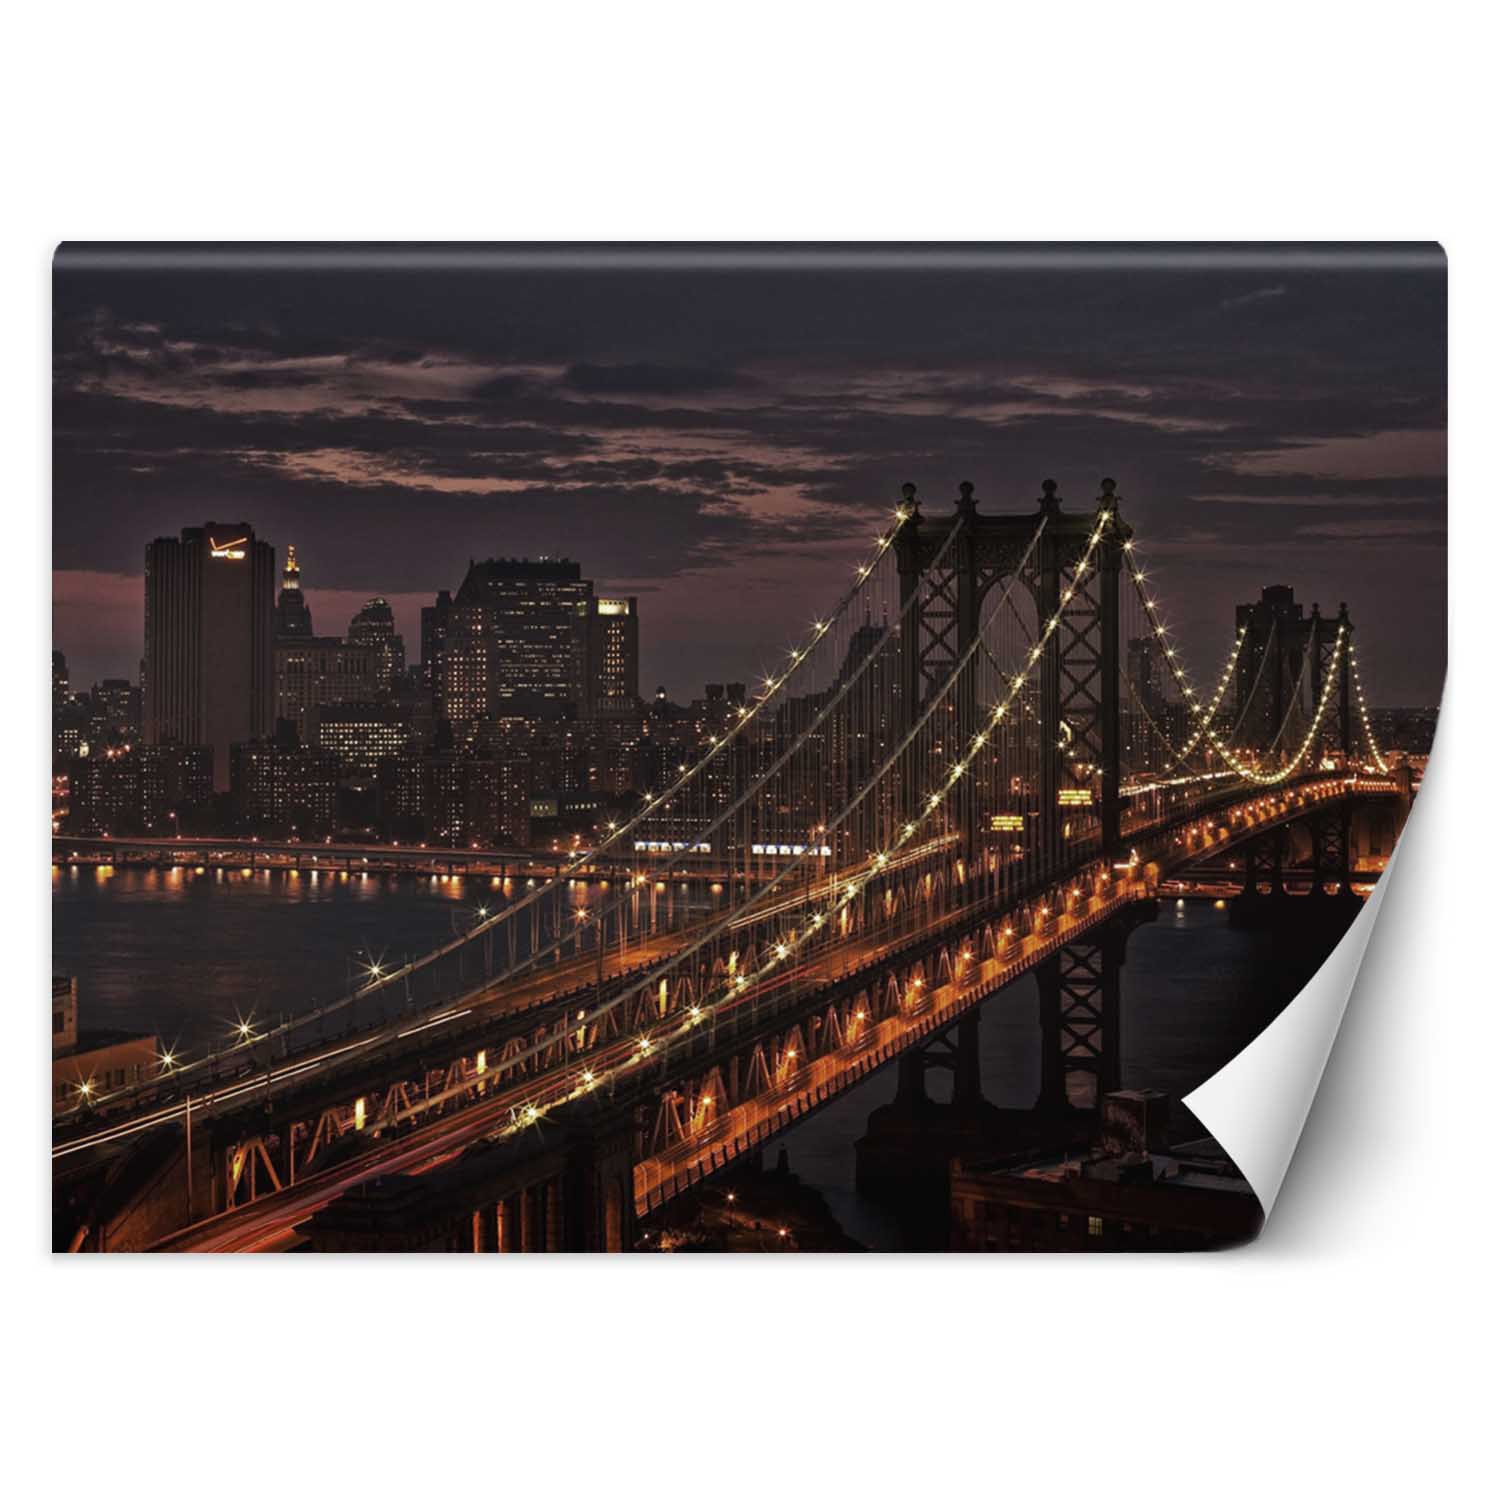 Trend24 – Behang – New York City Bridge – Vliesbehang – Fotobehang – Behang Woonkamer – 350x245x2 cm – Incl. behanglijm